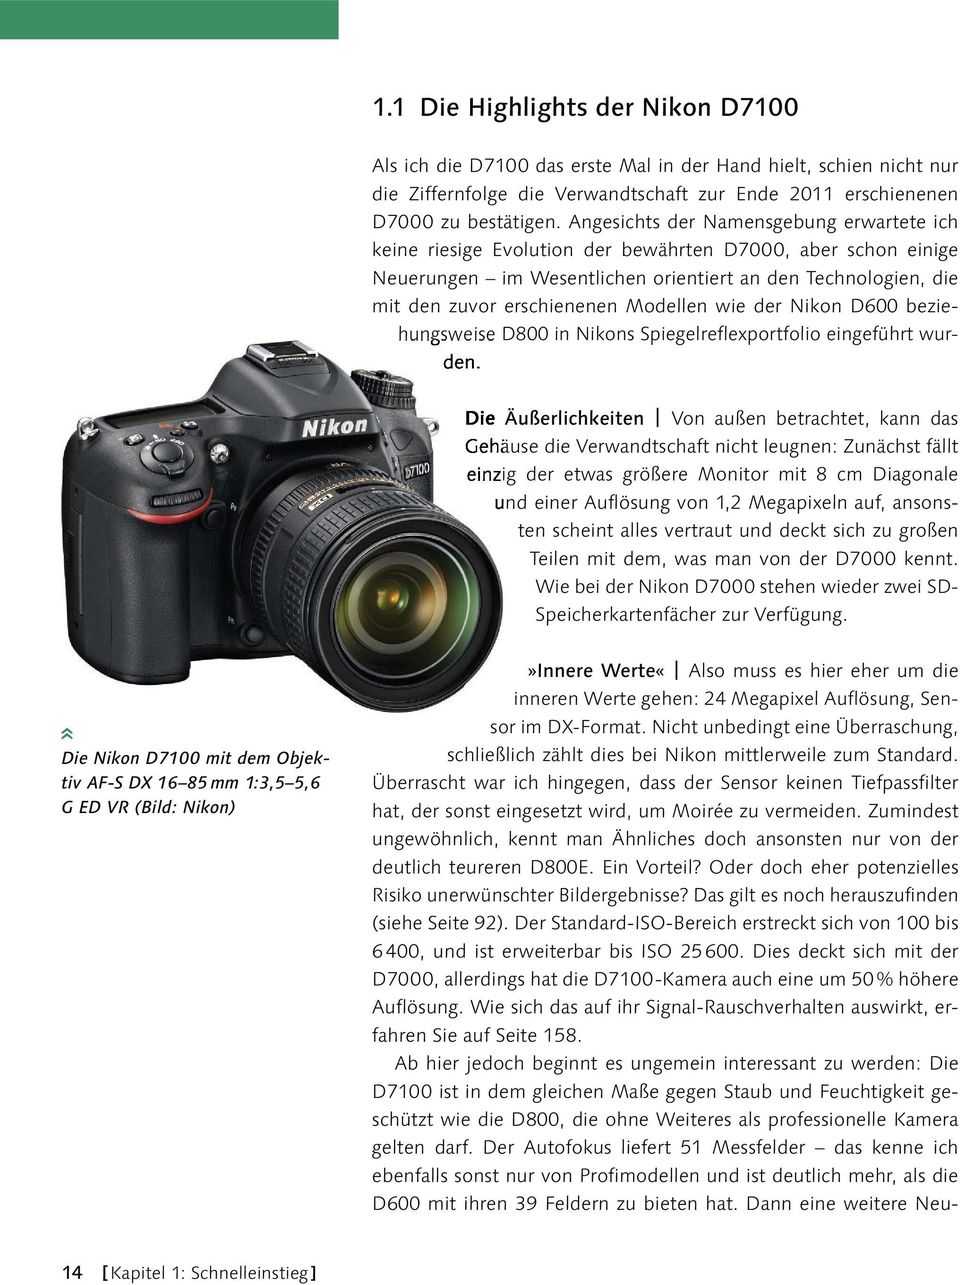 Modellen wie der Nikon D600 beziehungsweise D800 in Nikons Spiegelreflexportfolio eingeführt wurden.